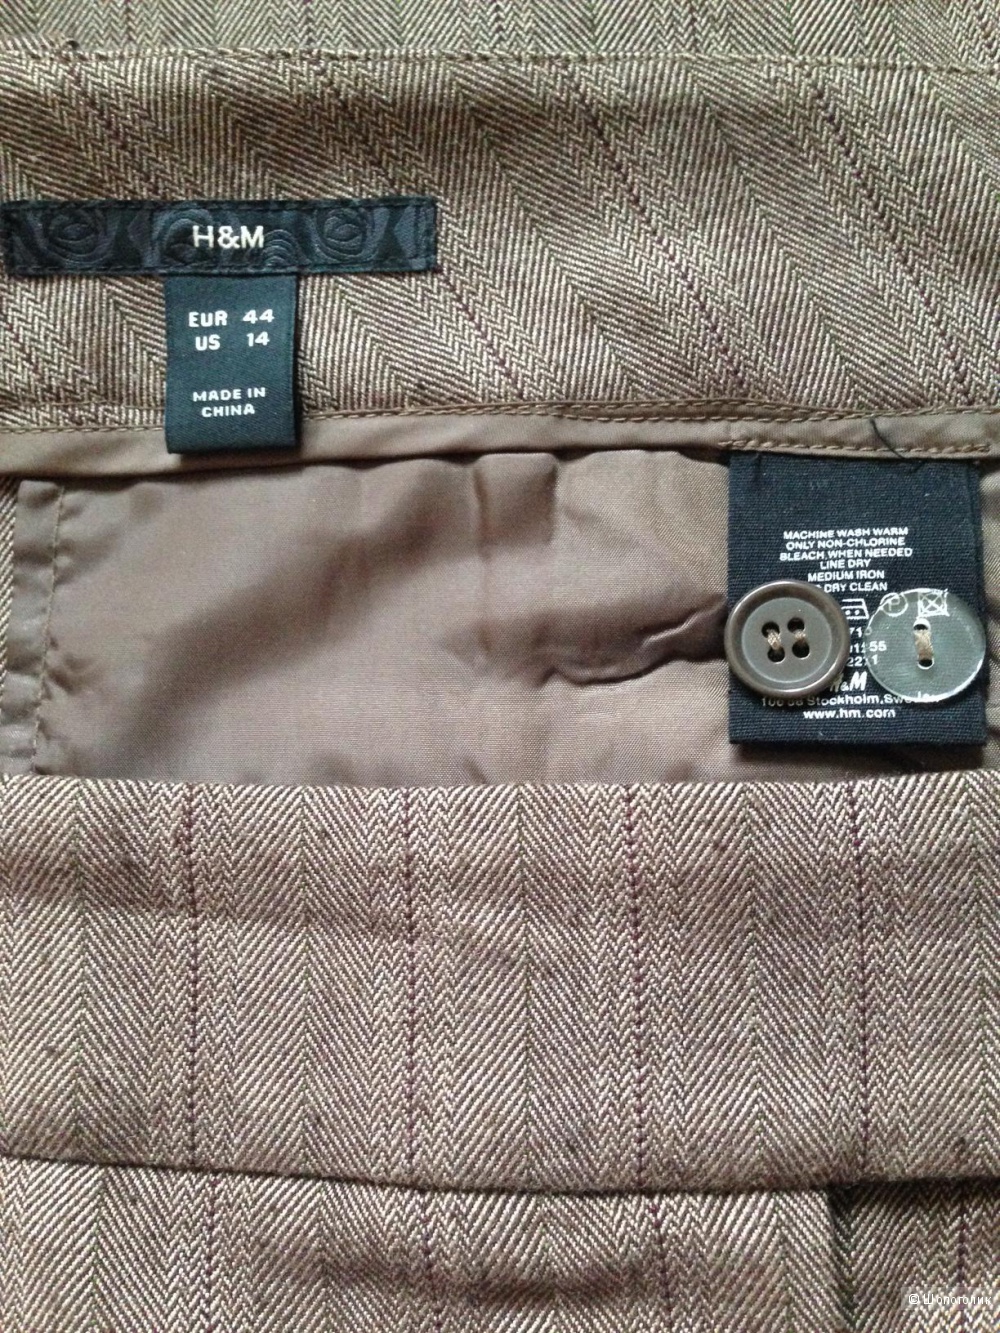 Брюки-кюлоты H&M серо-коричневые, р.50-52 (EUR44/US14)